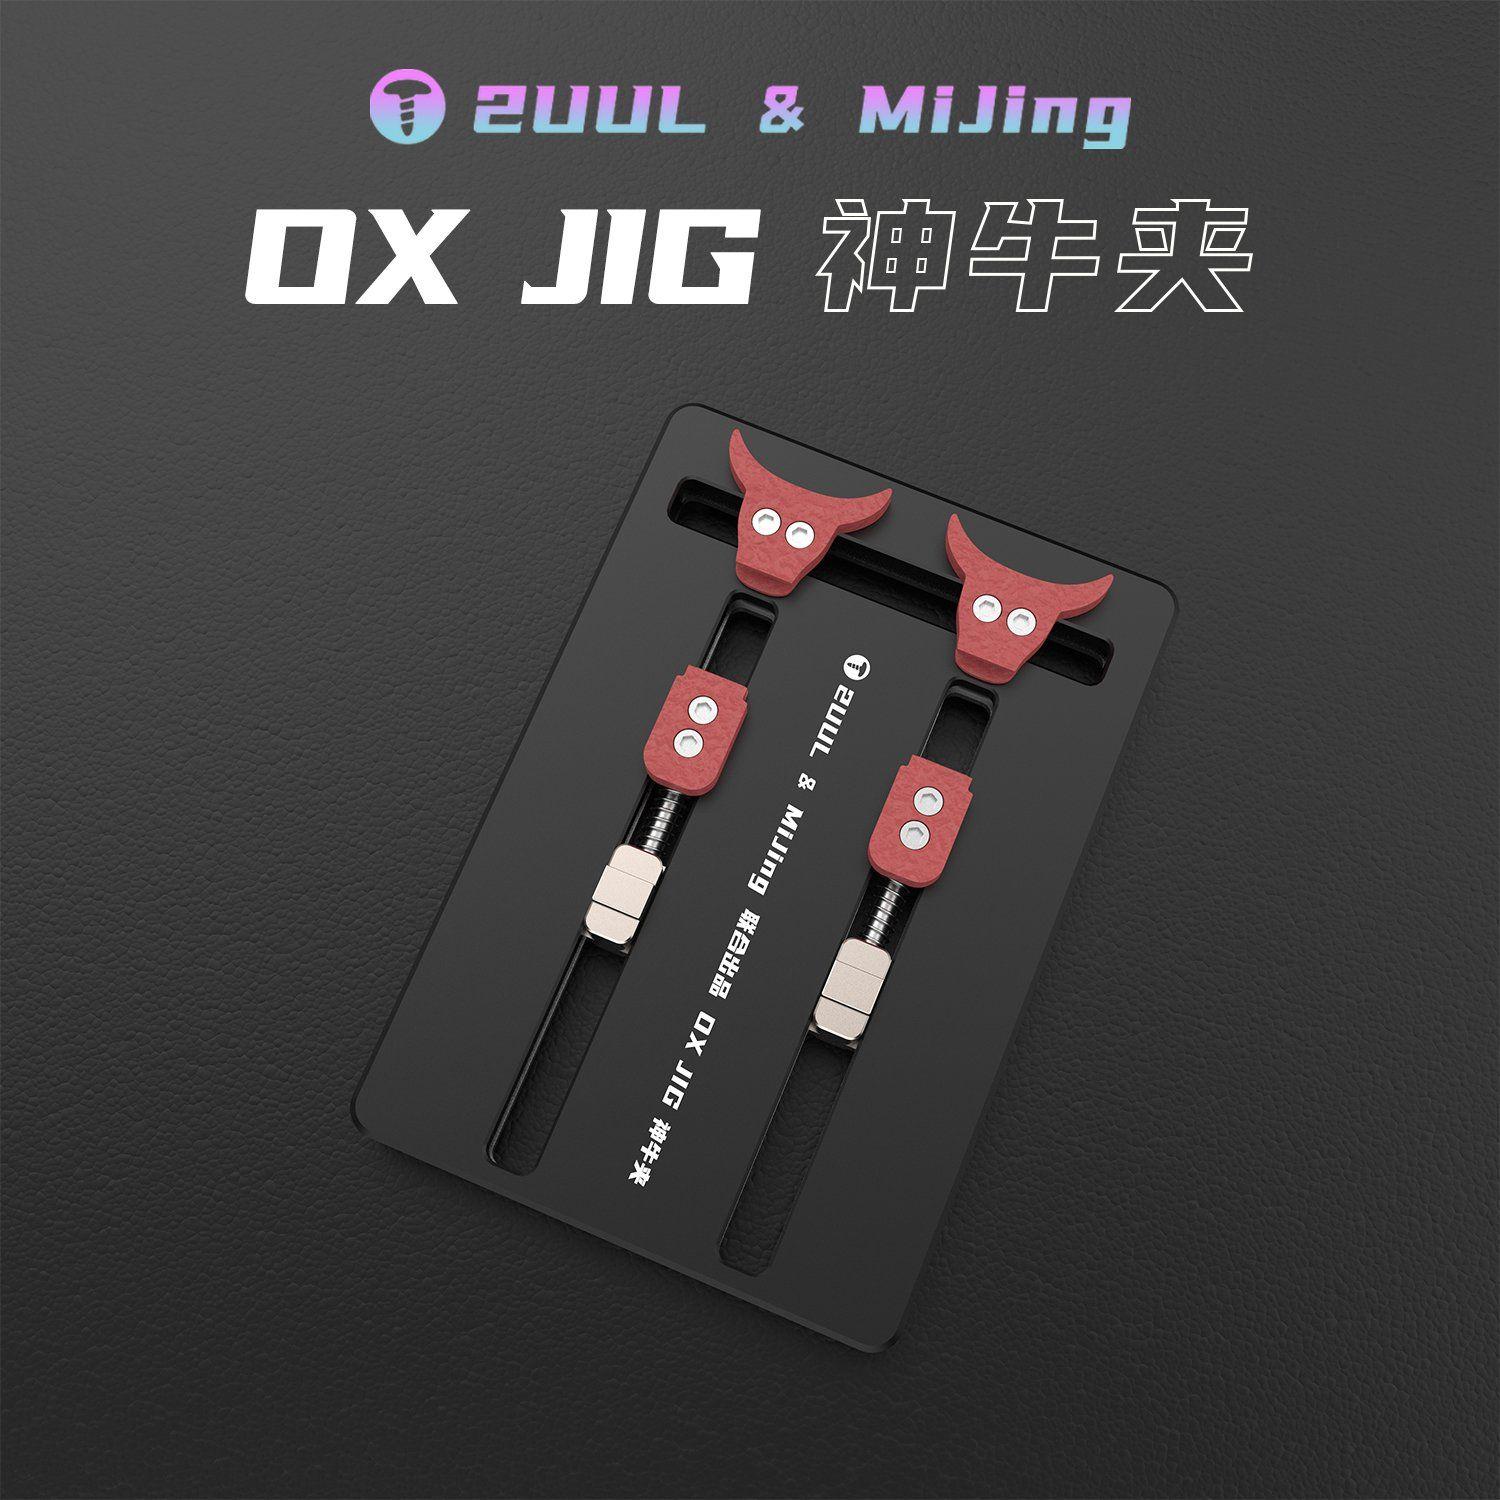 Wielofunkcyjny uchwyt do naprawy PCB 2uuL & MiJing OX JIG